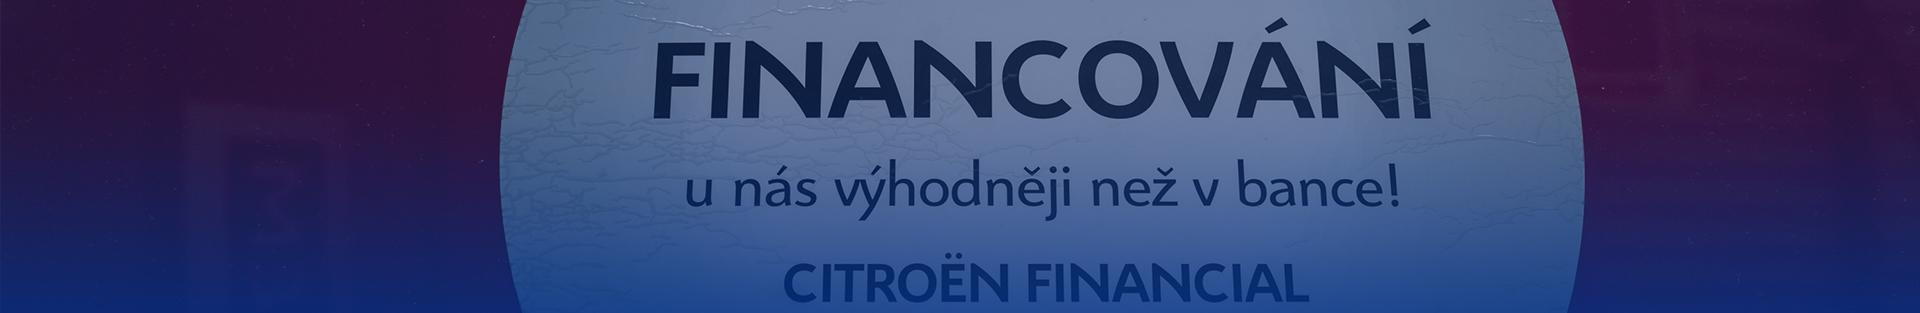 Financování nákupu vozů Citroën